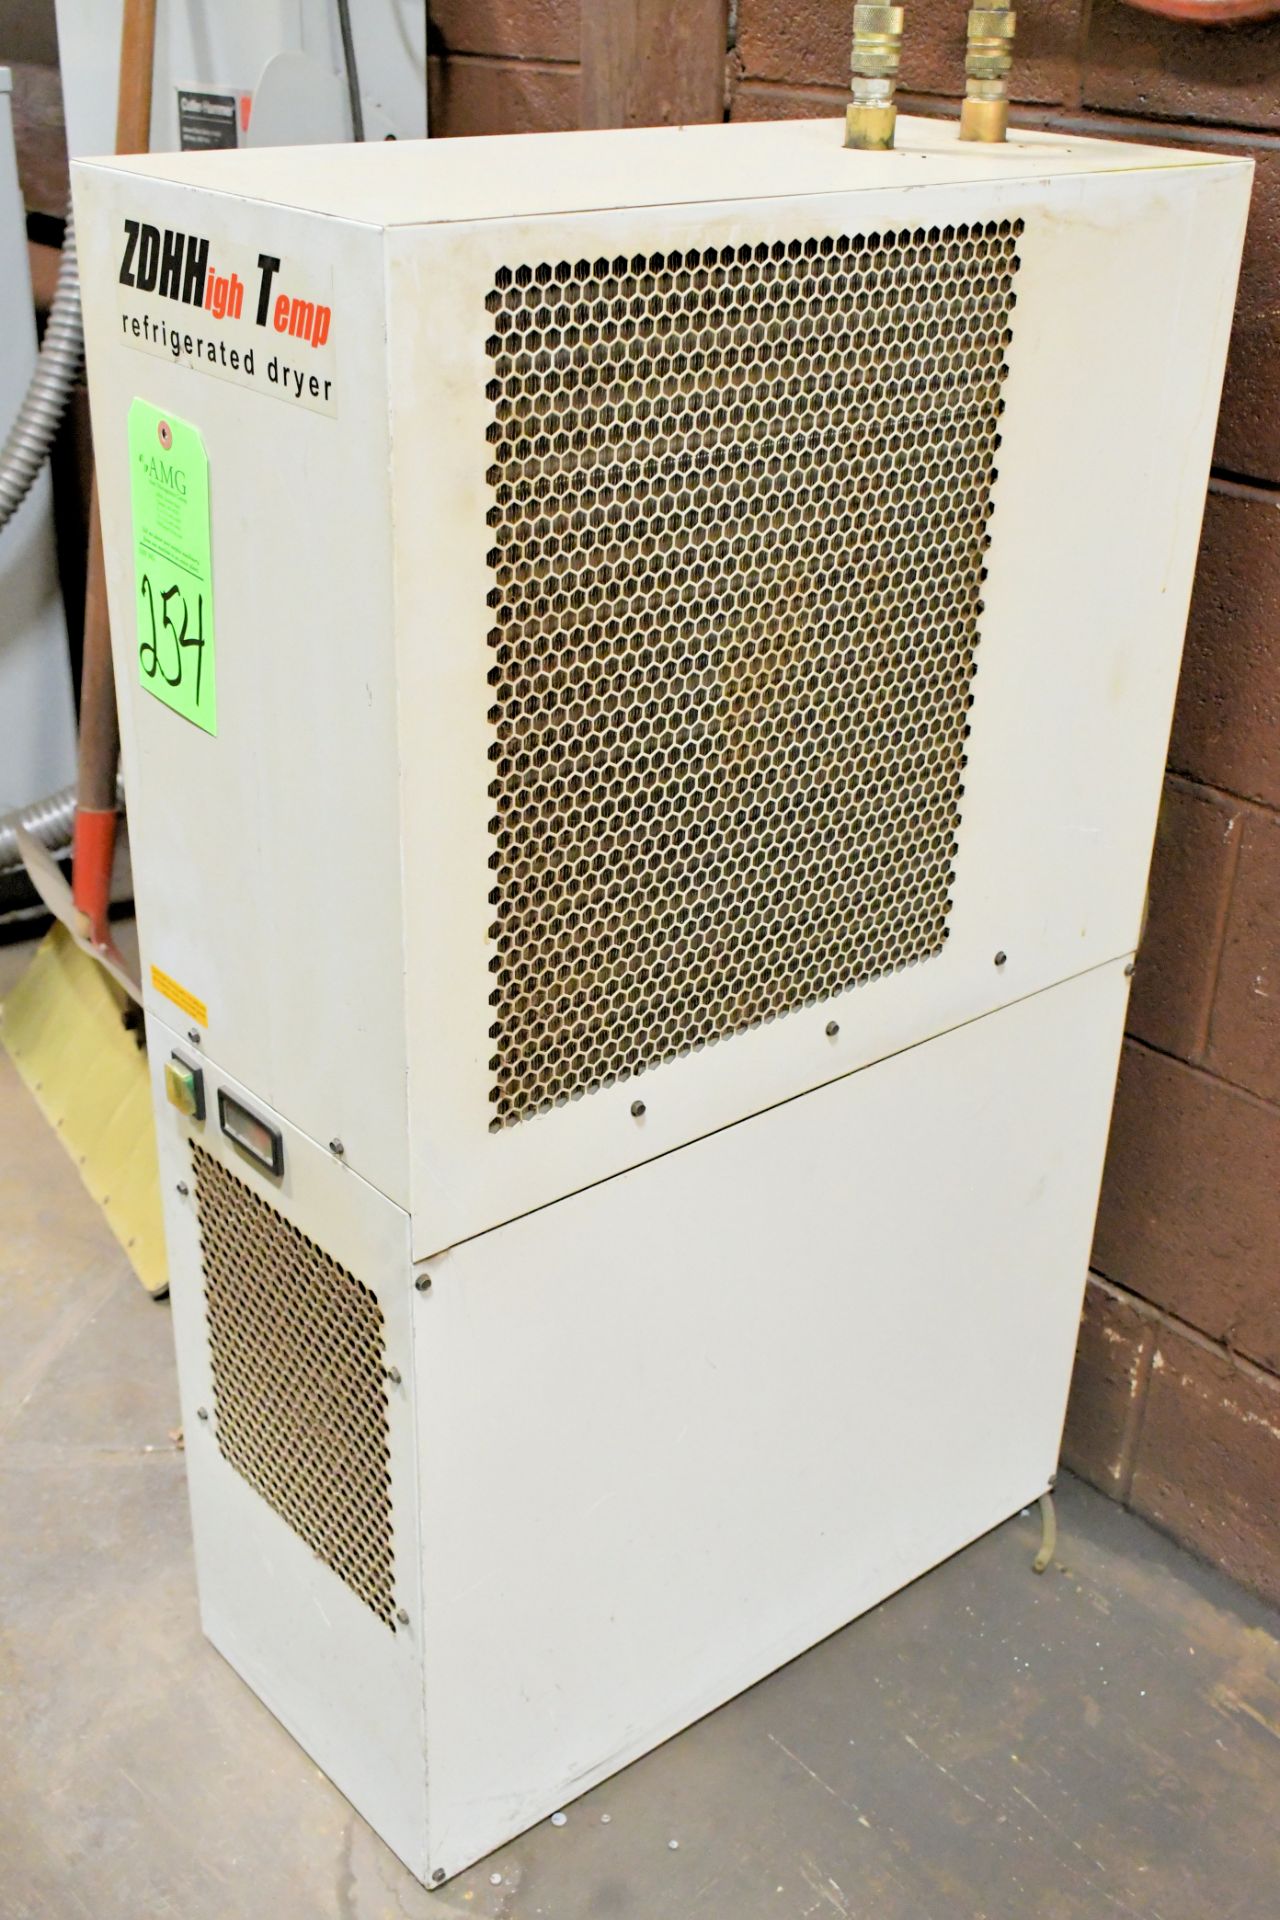 ZDH High Temp Refrigerated Dryer System - Bild 2 aus 3